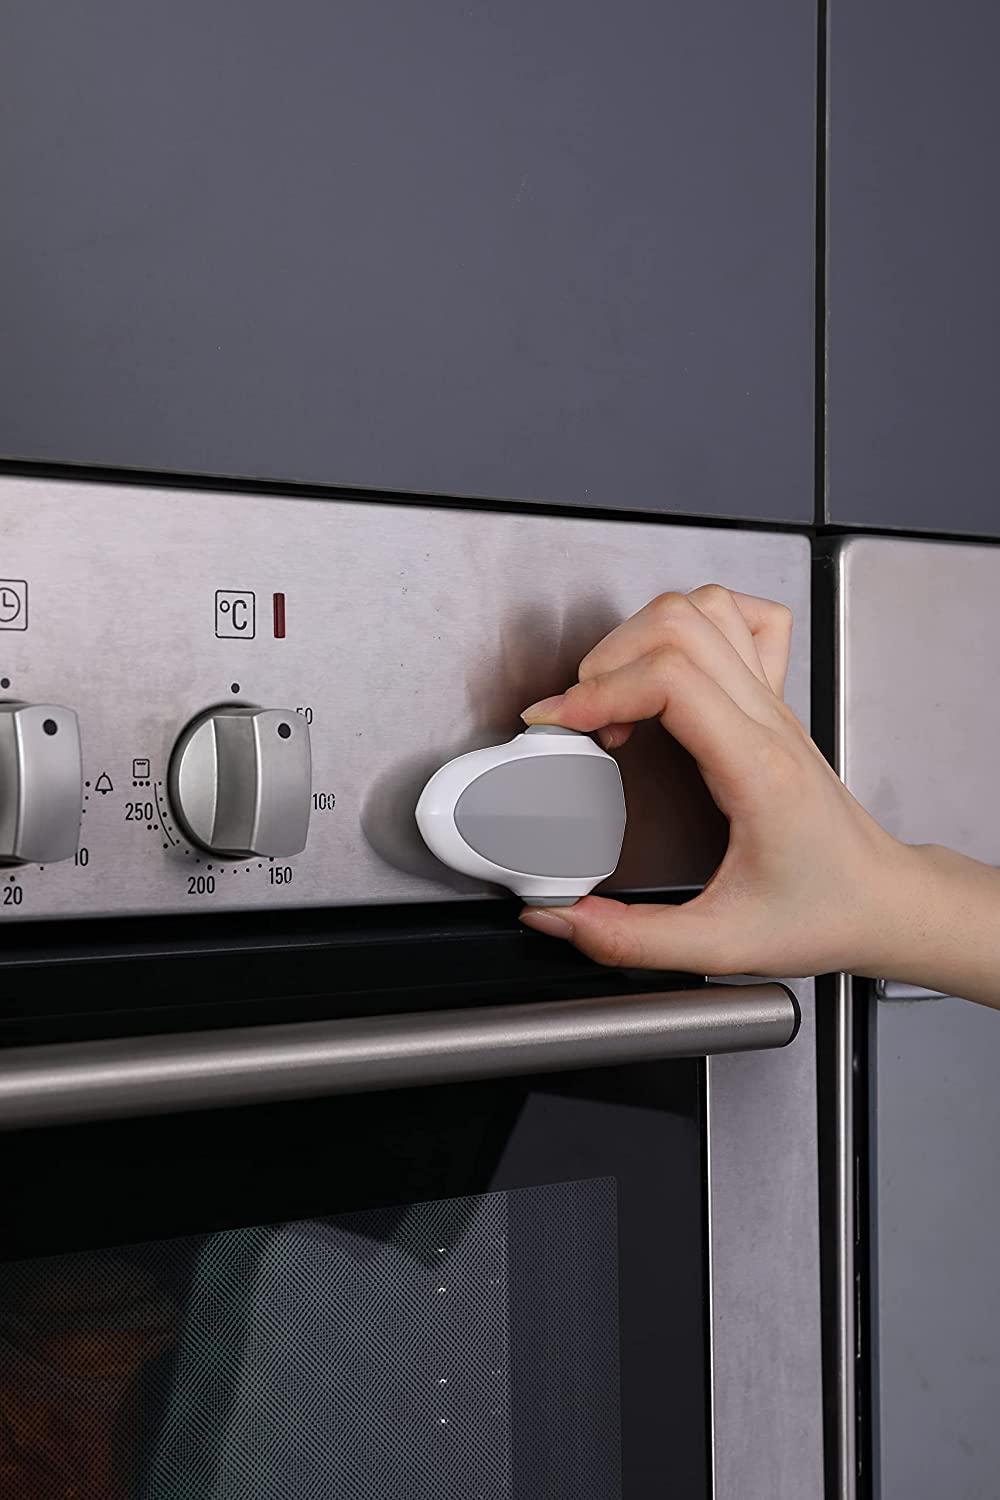 2 Pcs Child Safety Oven Door Lock,Heat-Resistant Baby Proof Oven